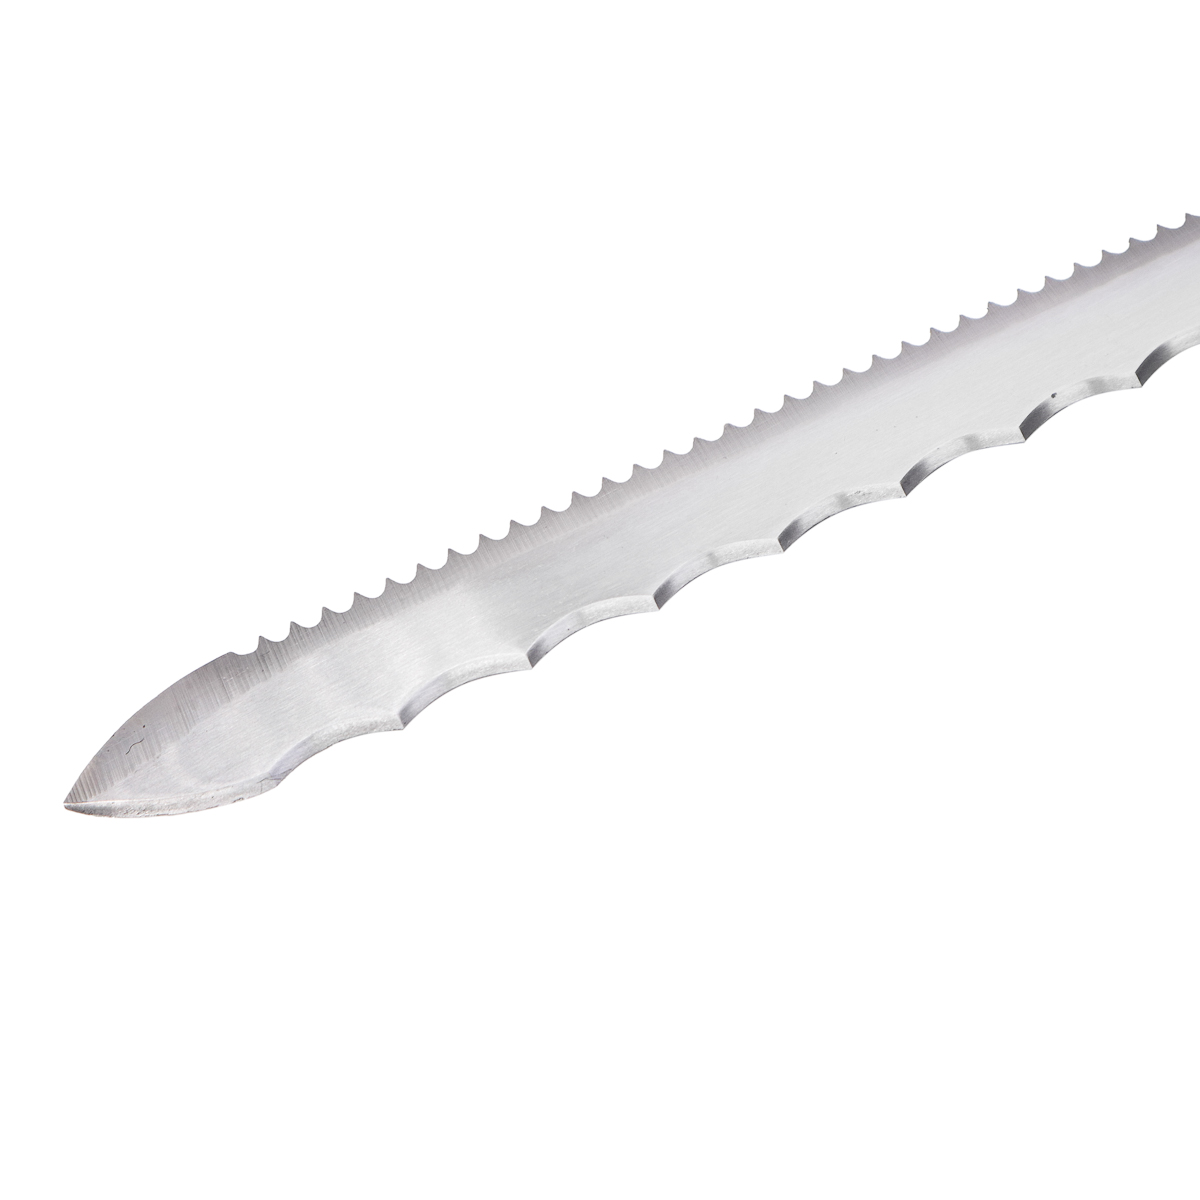 Купить нож для теплоизоляции большой, isover по выгодной цене  .